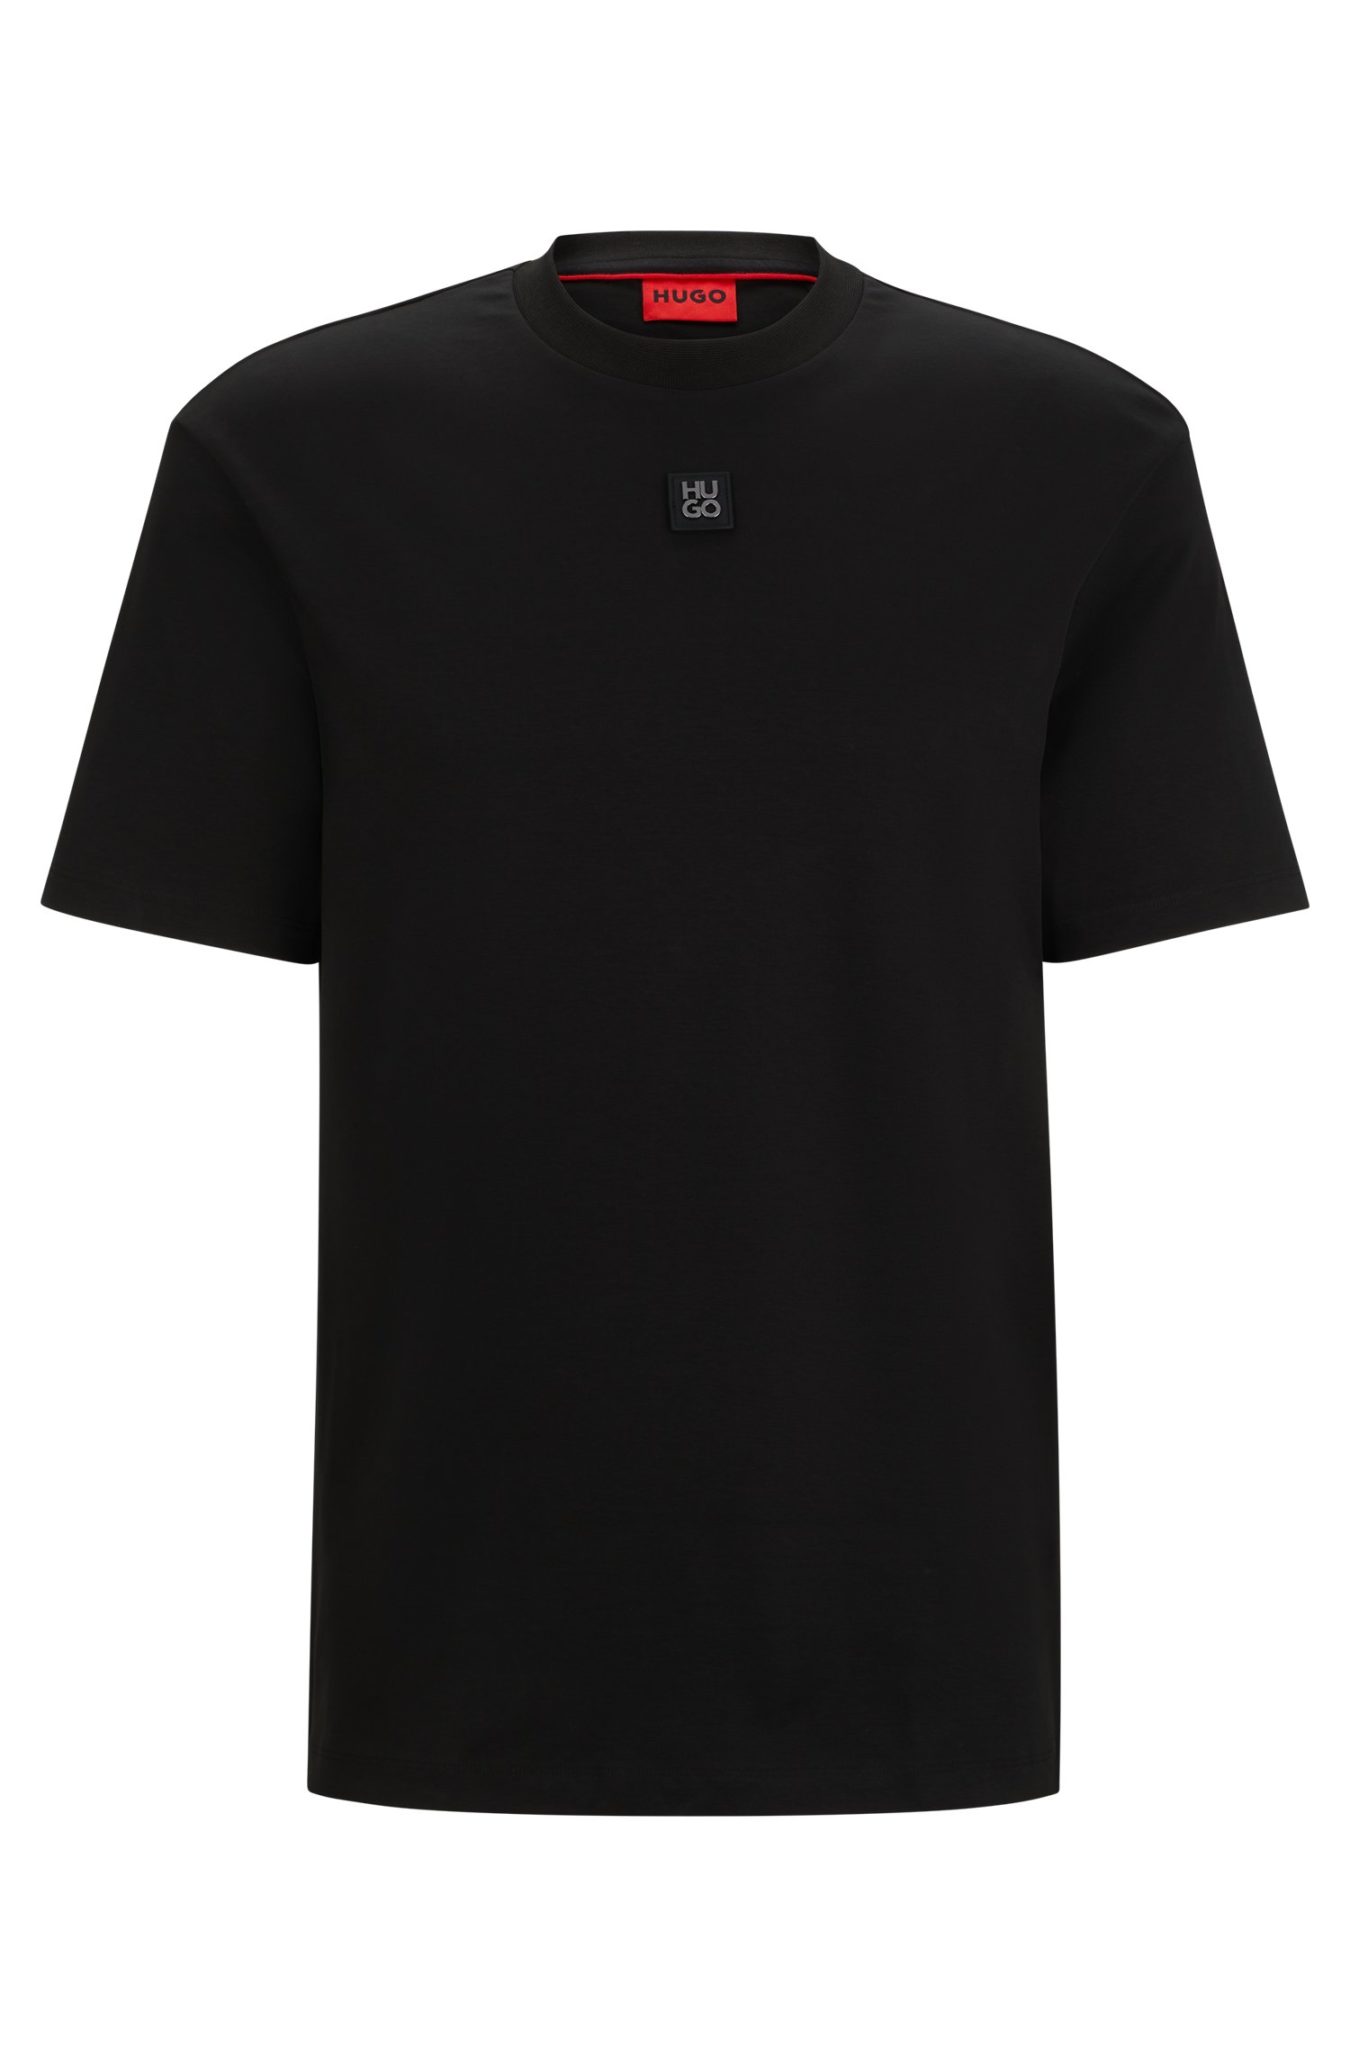 Hugo Boss T-shirt Regular en coton interlock à logo revisité